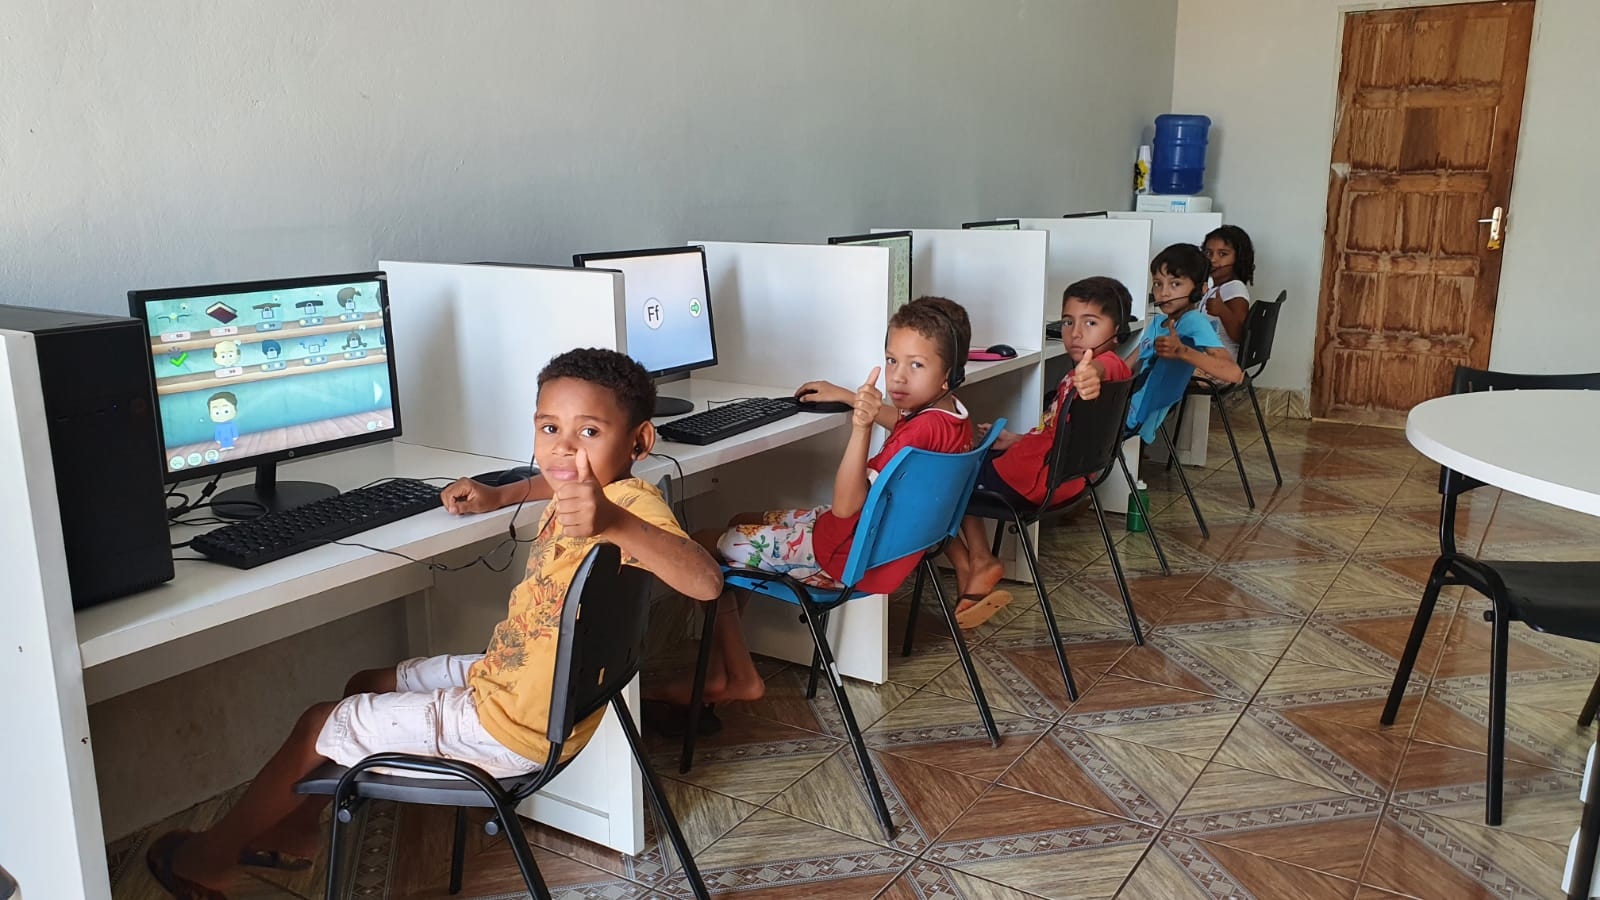 Secretaria Municipal de Educação oferta Curso de Informática Básica aos estudantes de Angico